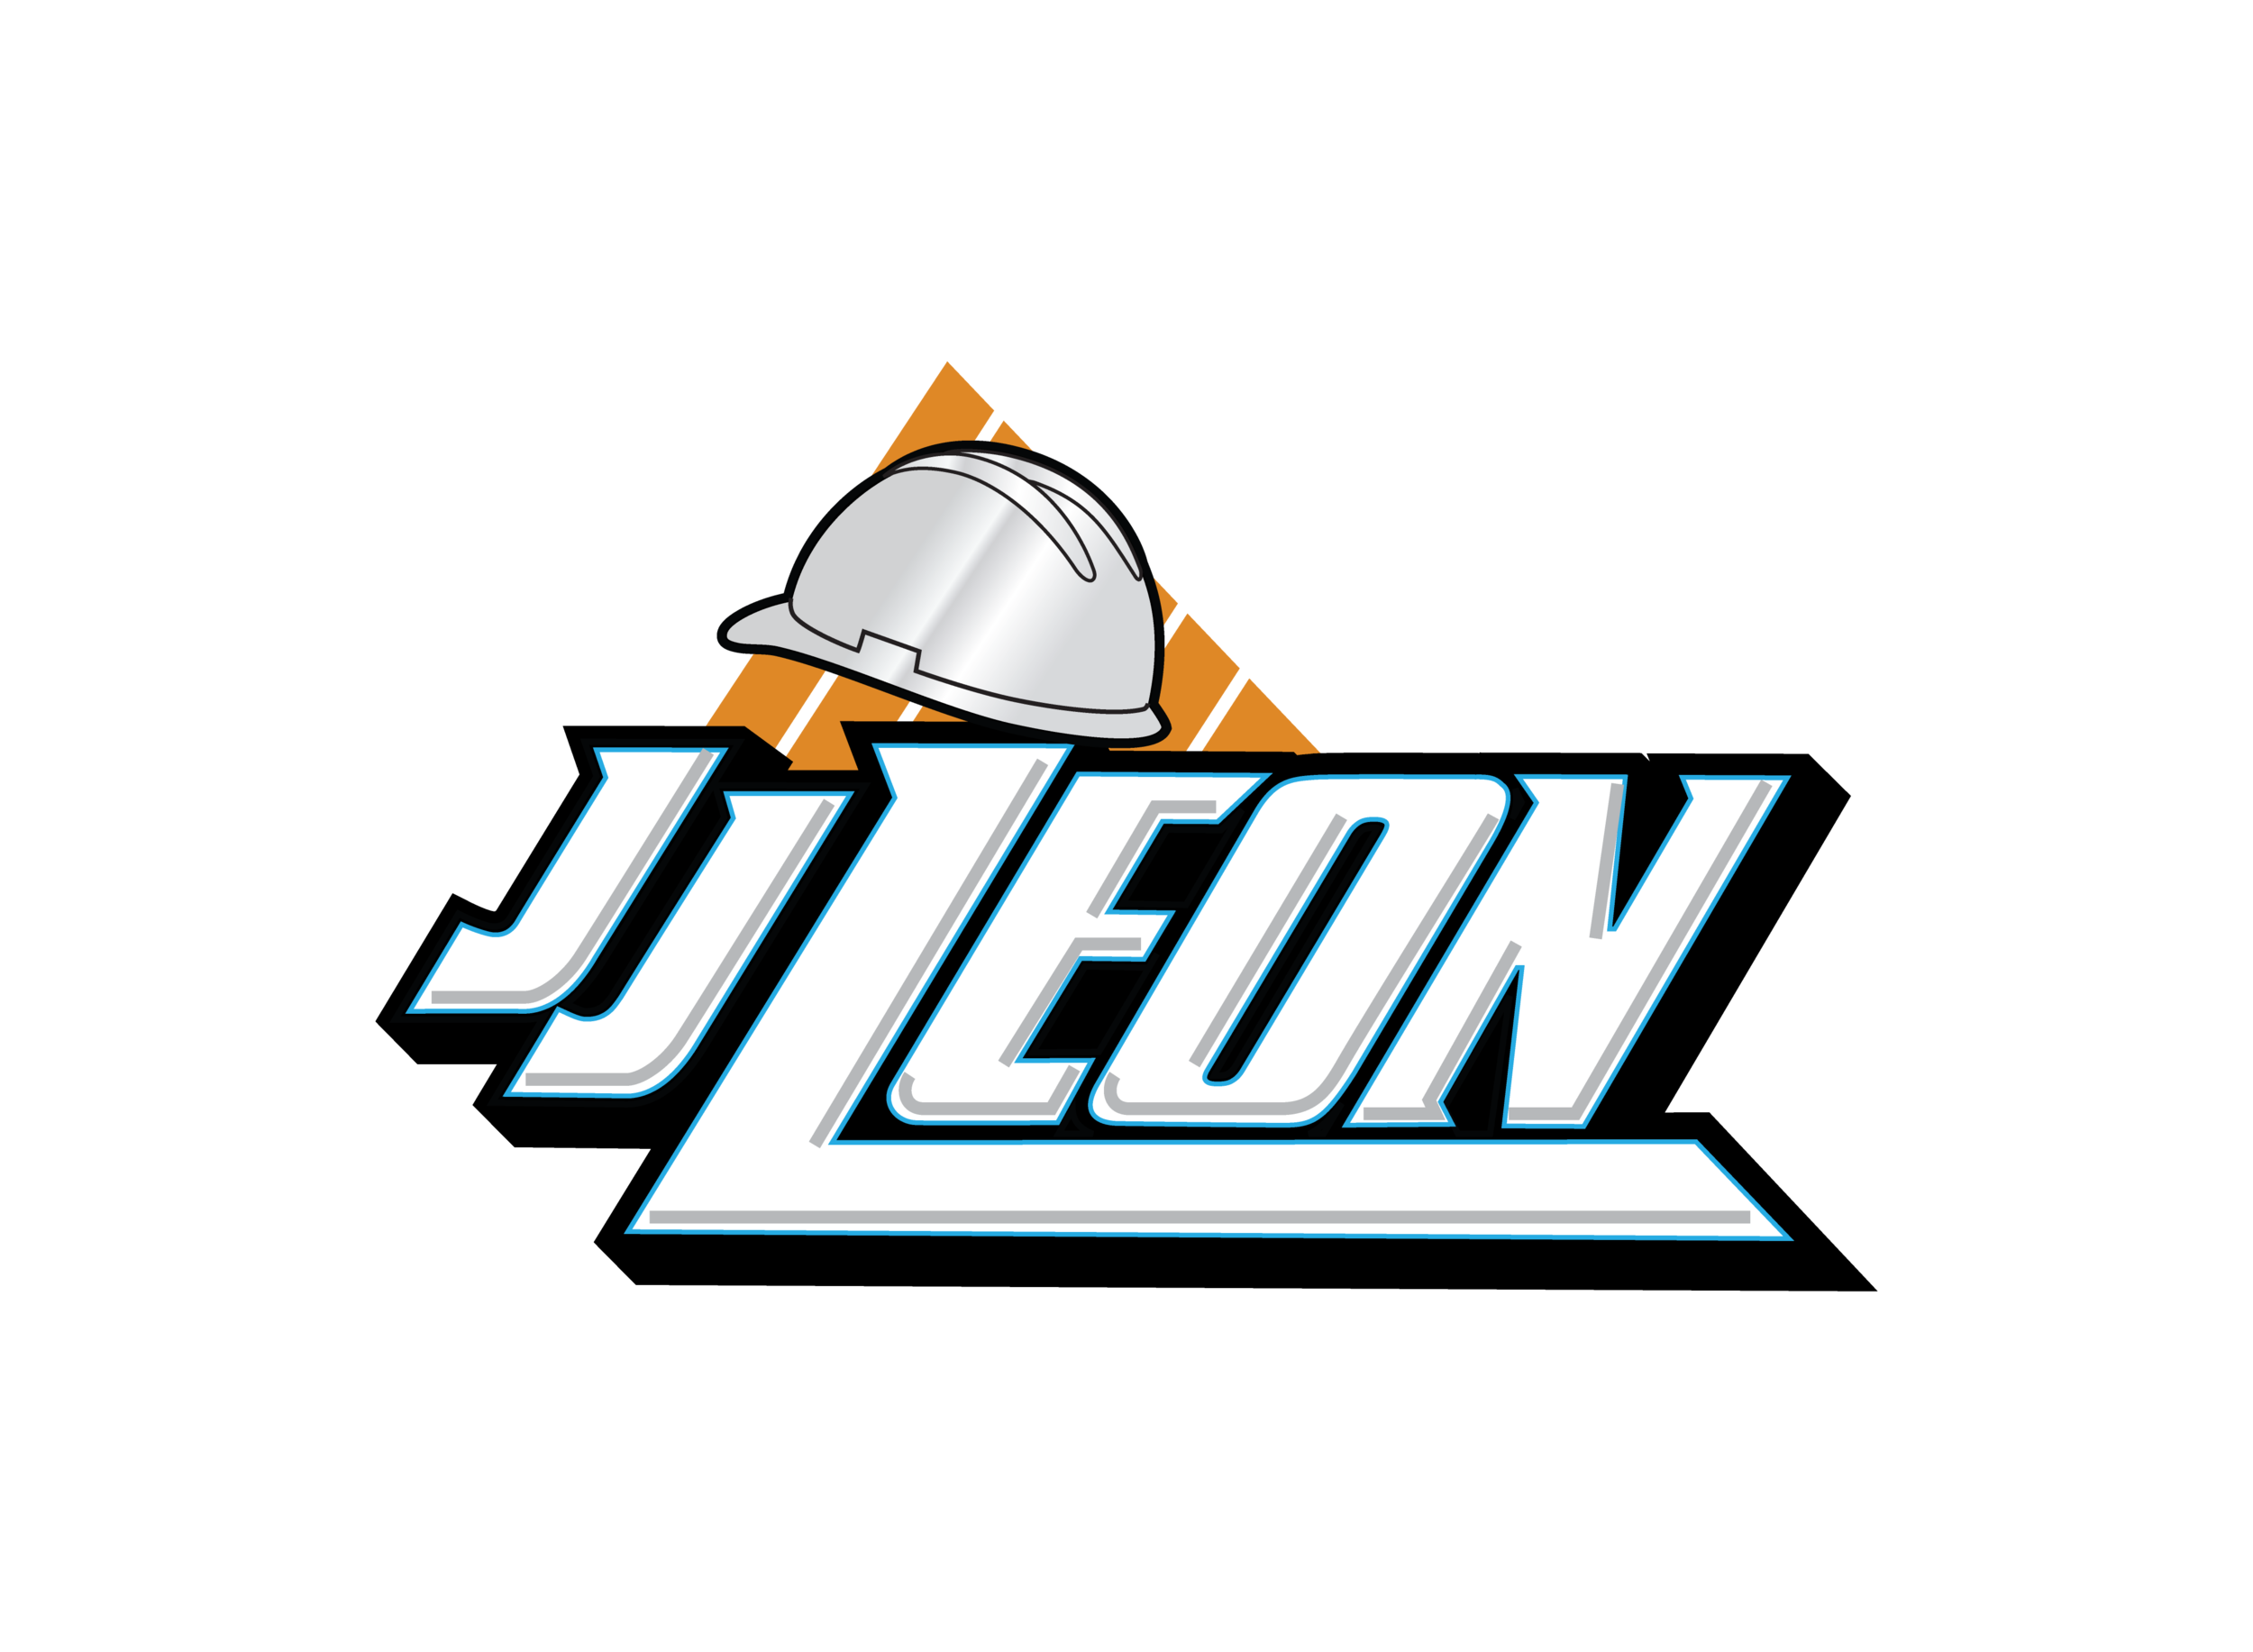 JJ Leon Construction